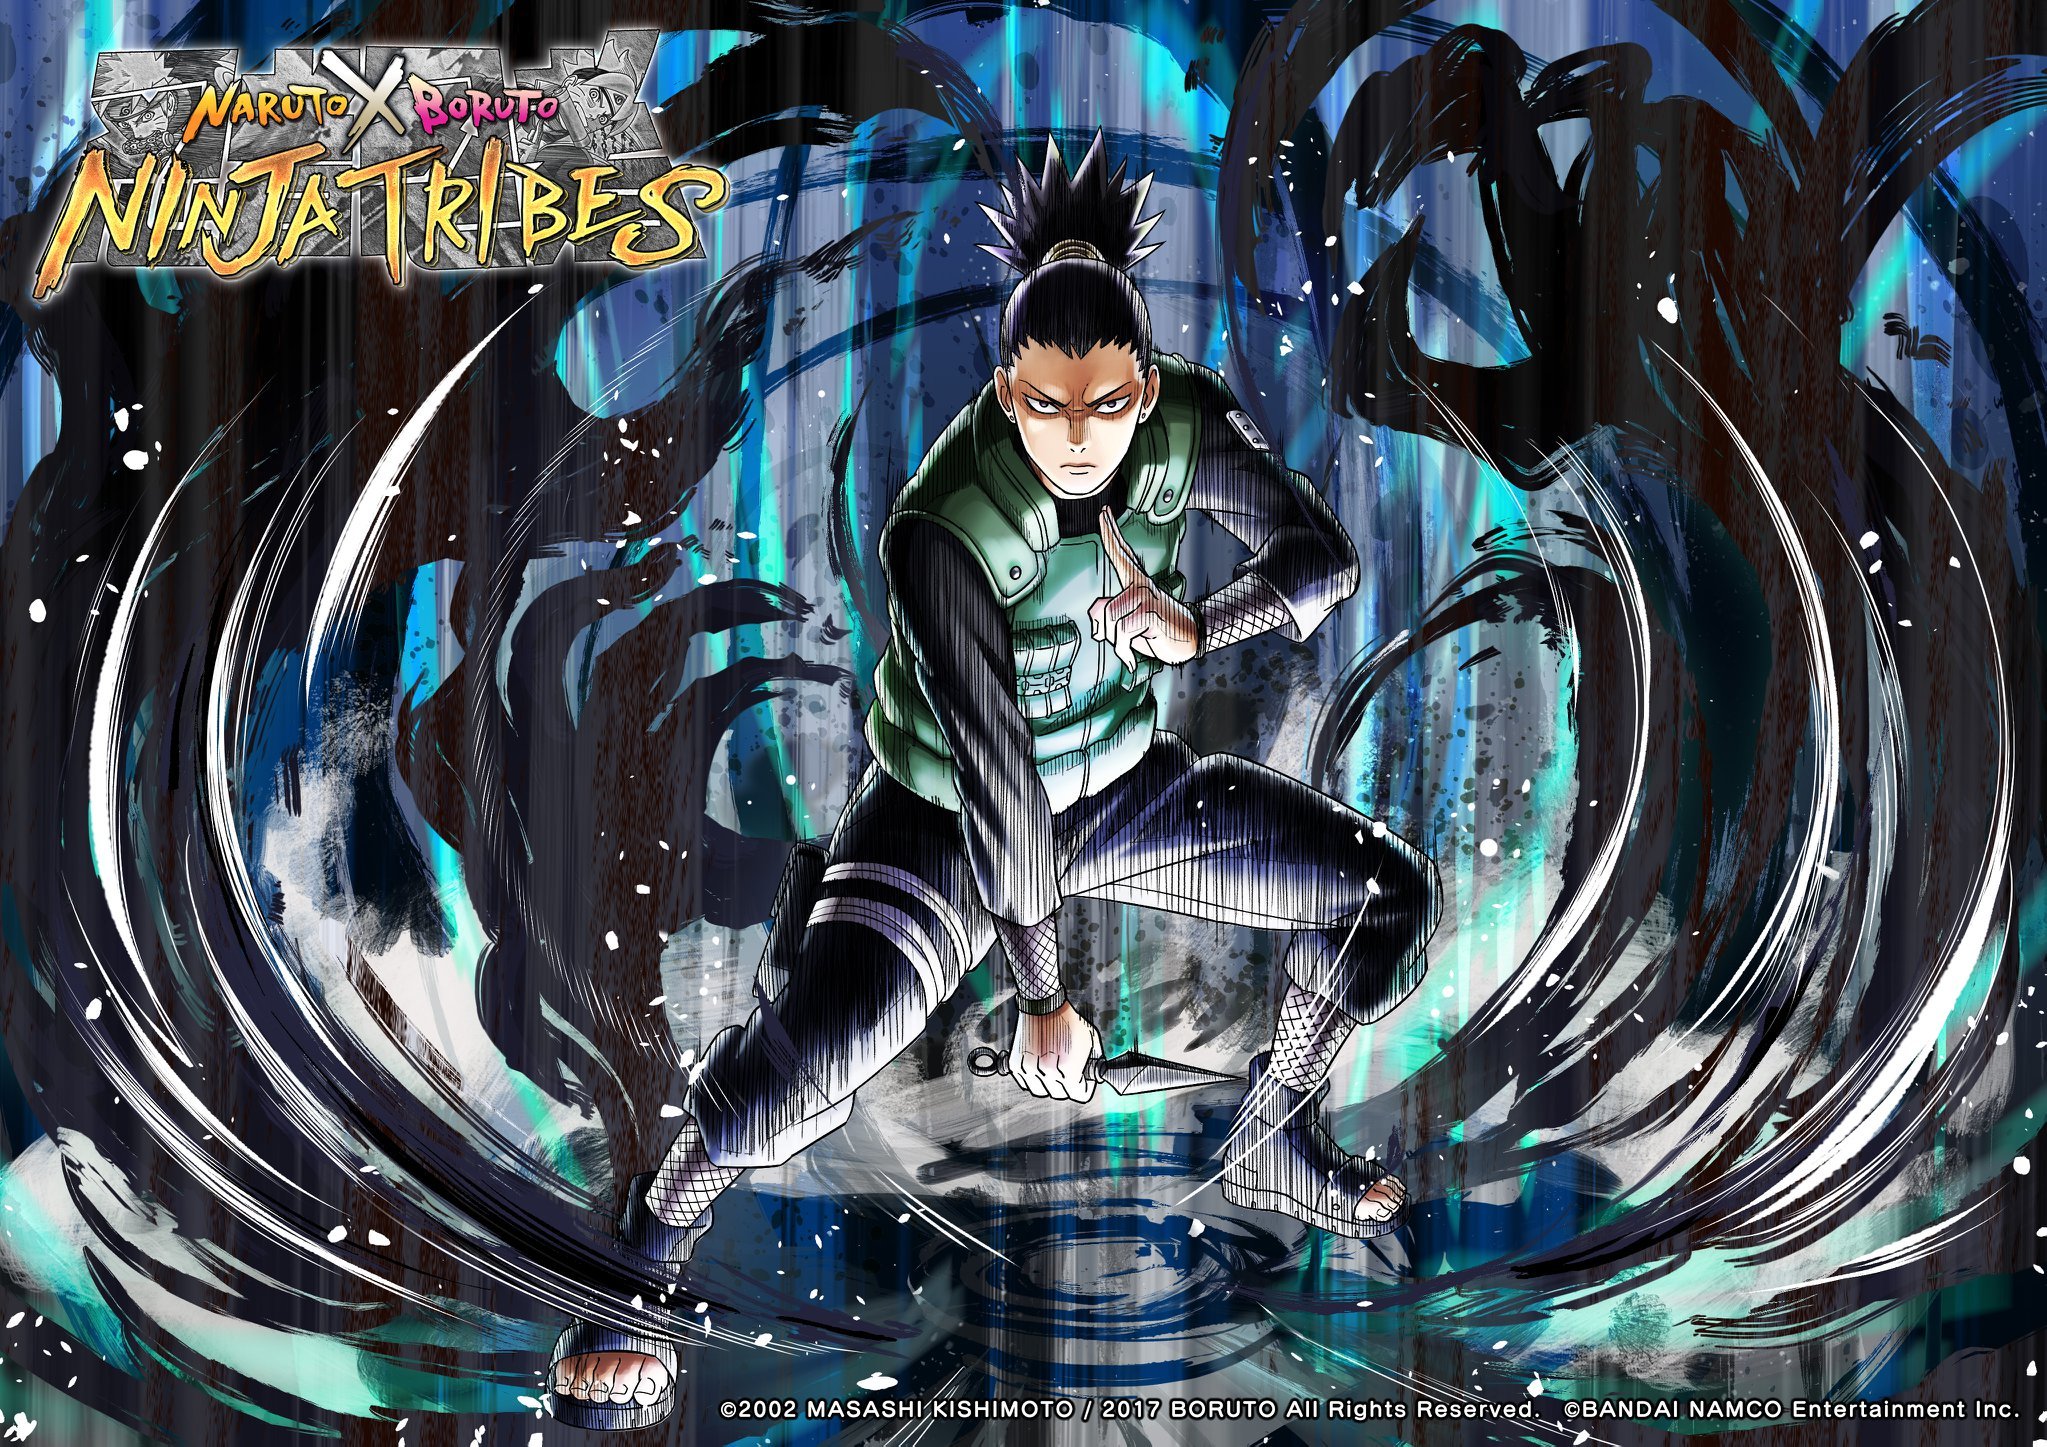 Shikamaru Shadow Possession Jutsu Wallpaper (NARUTO X BORUTO Ninja Tribes)